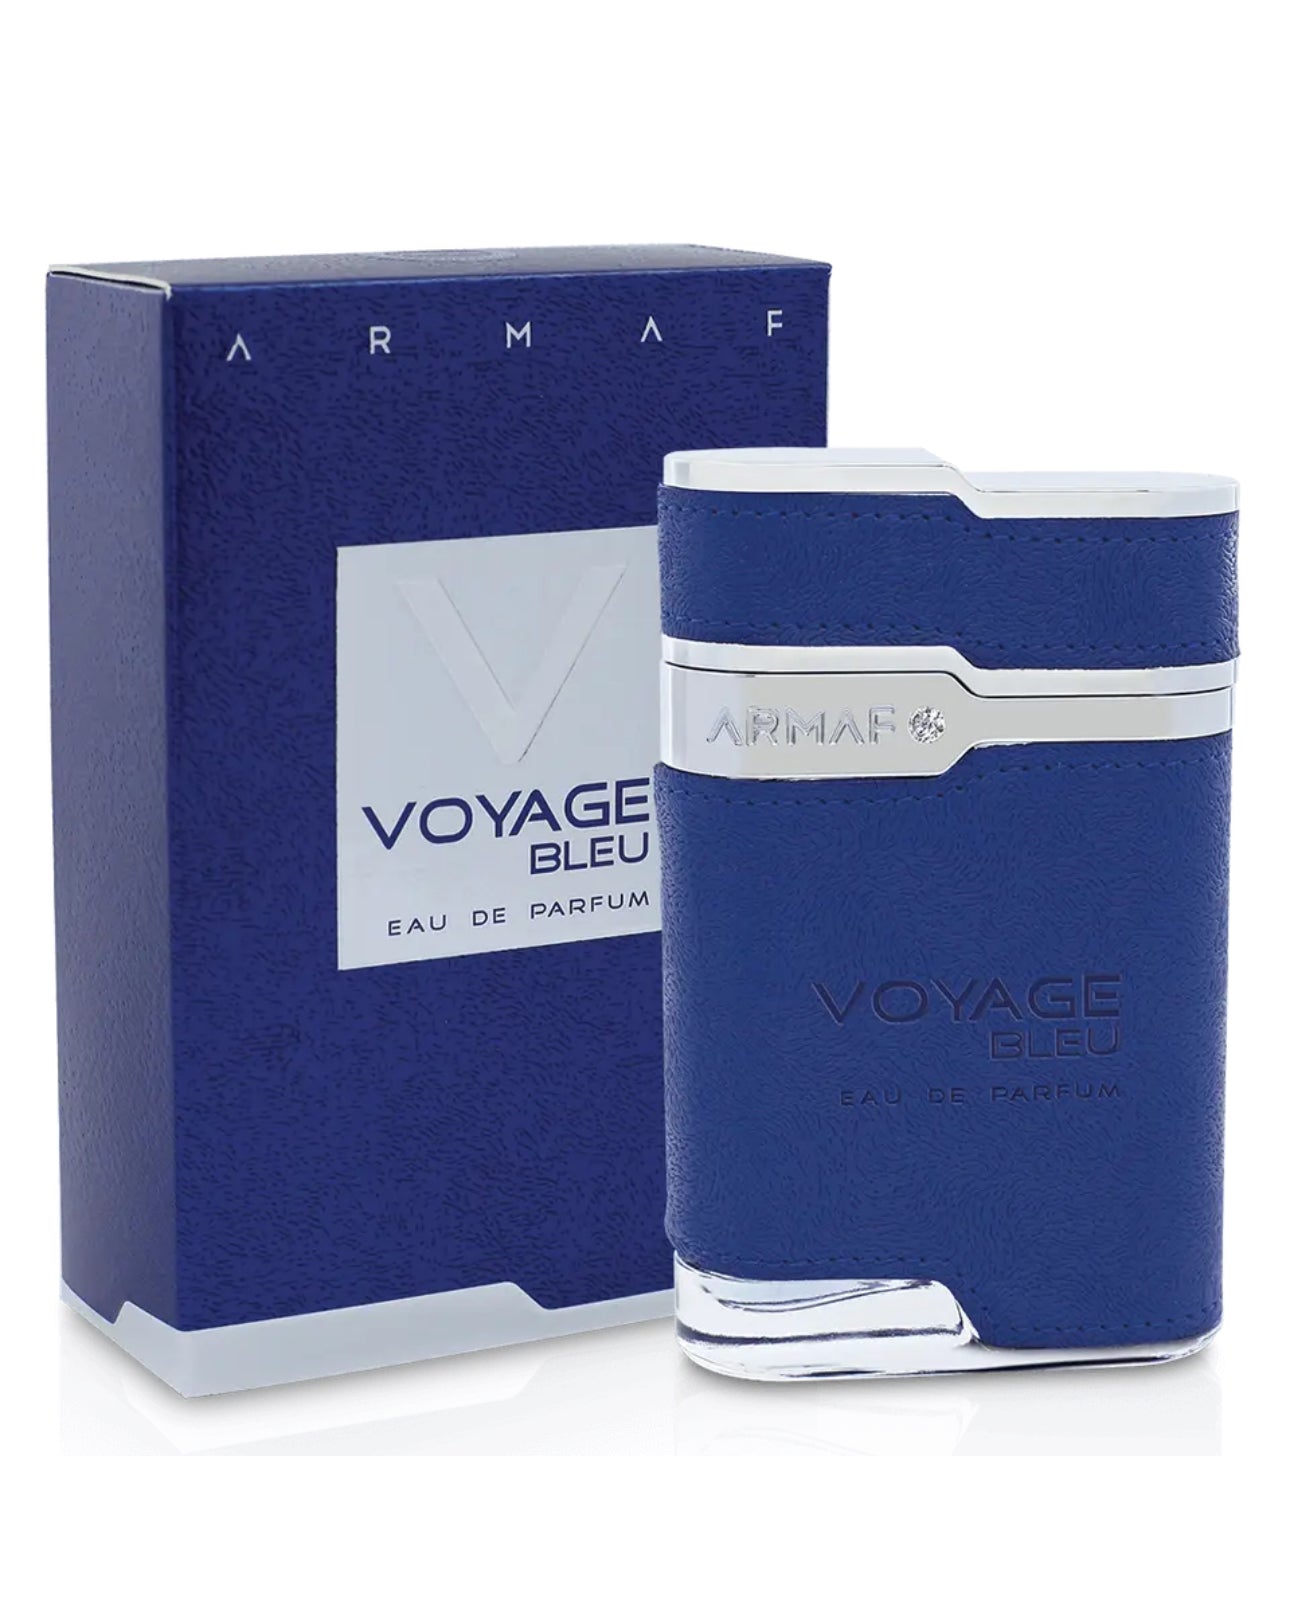 Voyage Bleu by Armaf eau de Parfum 3.4